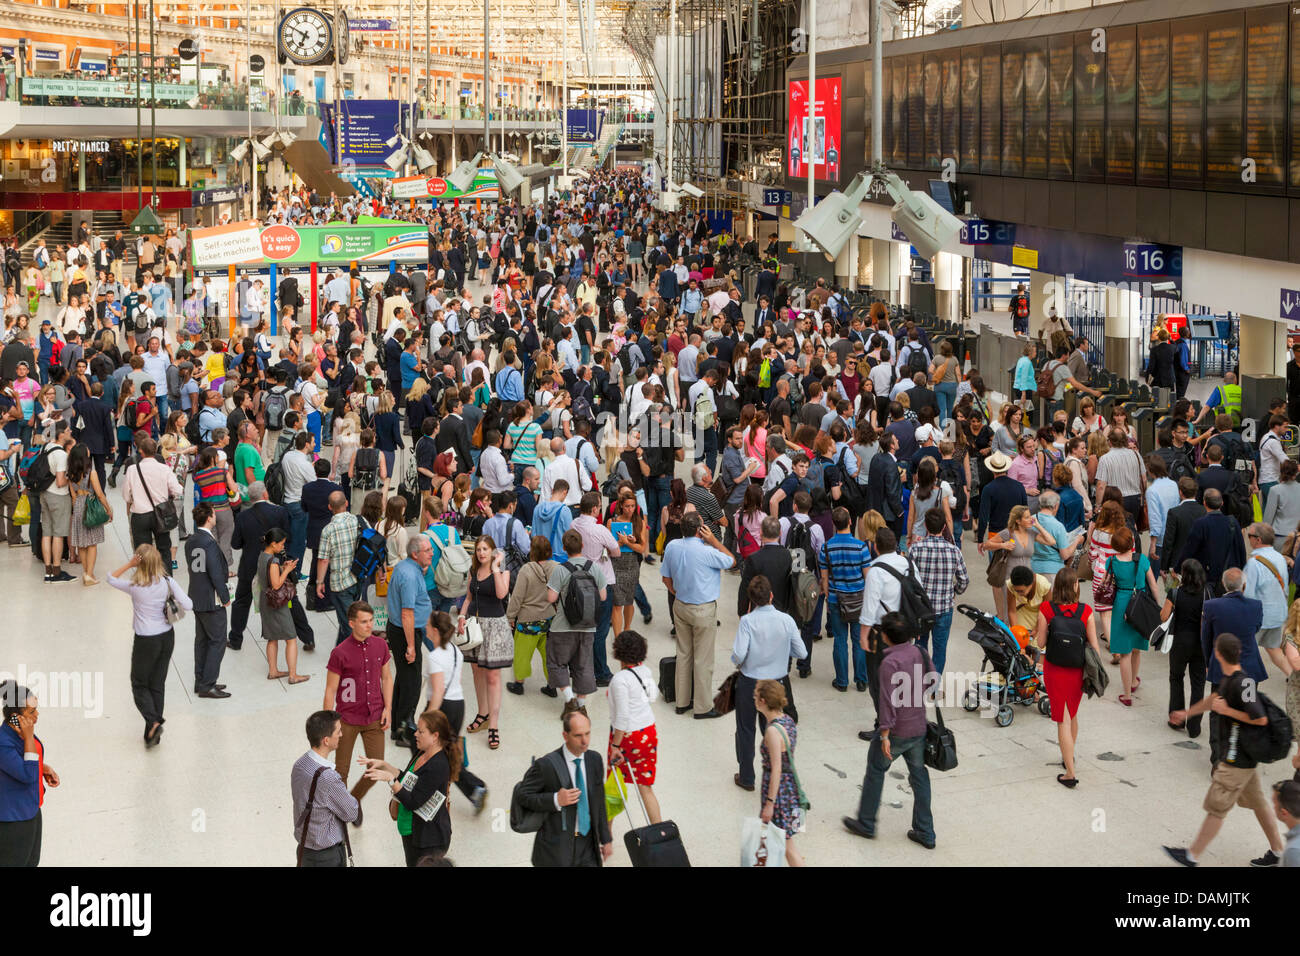 Des foules de personnes en attente d'un train à la gare de Waterloo, London, England, UK Banque D'Images